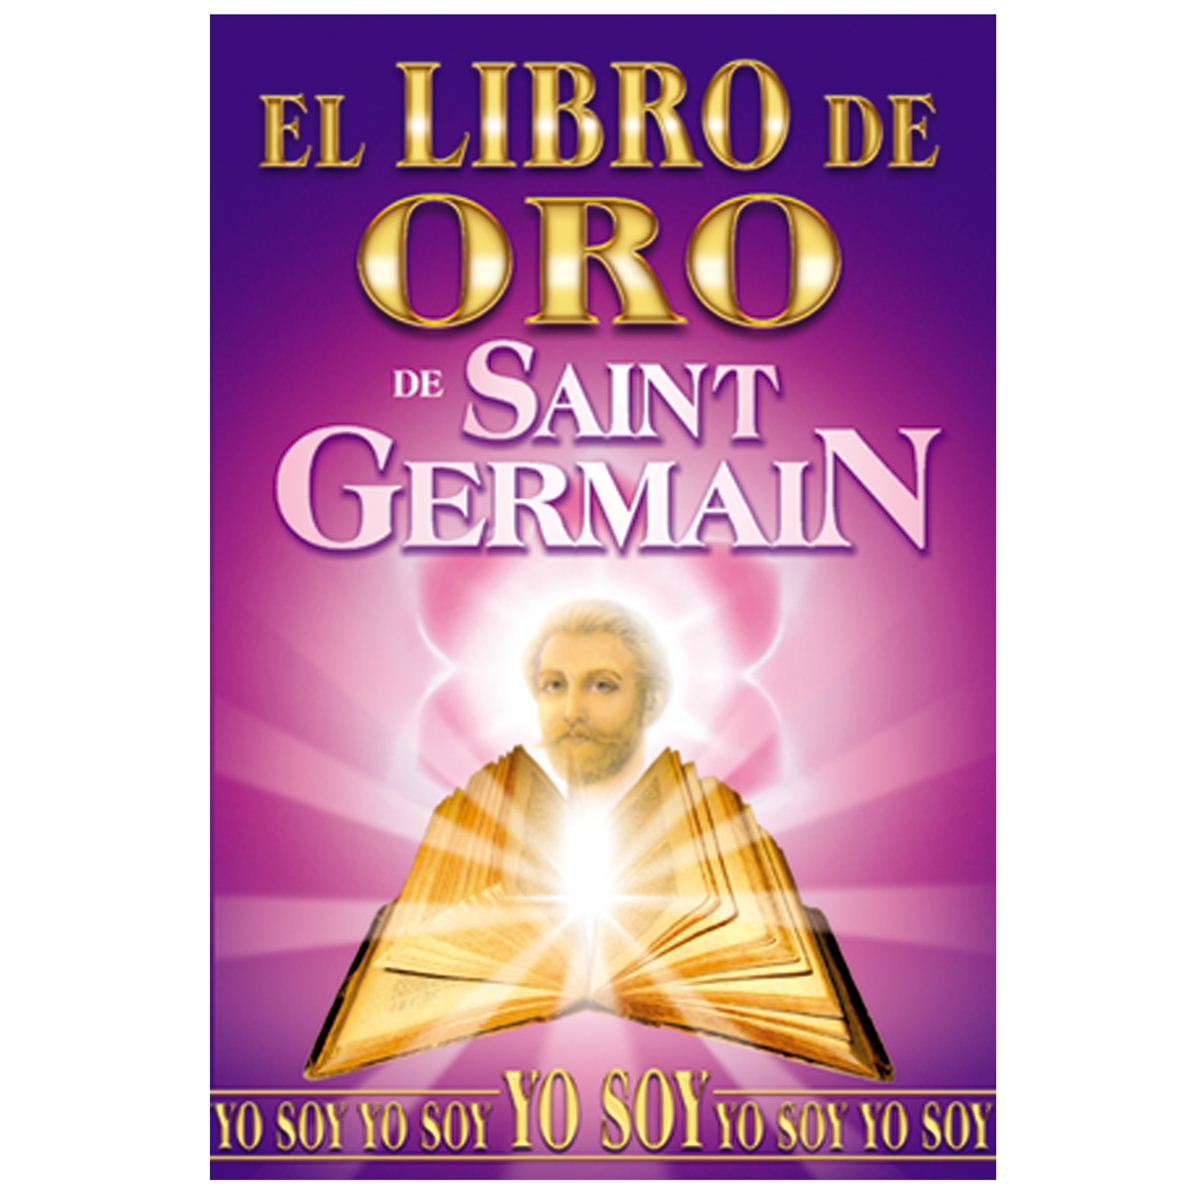 El Saint Germain libro de oro